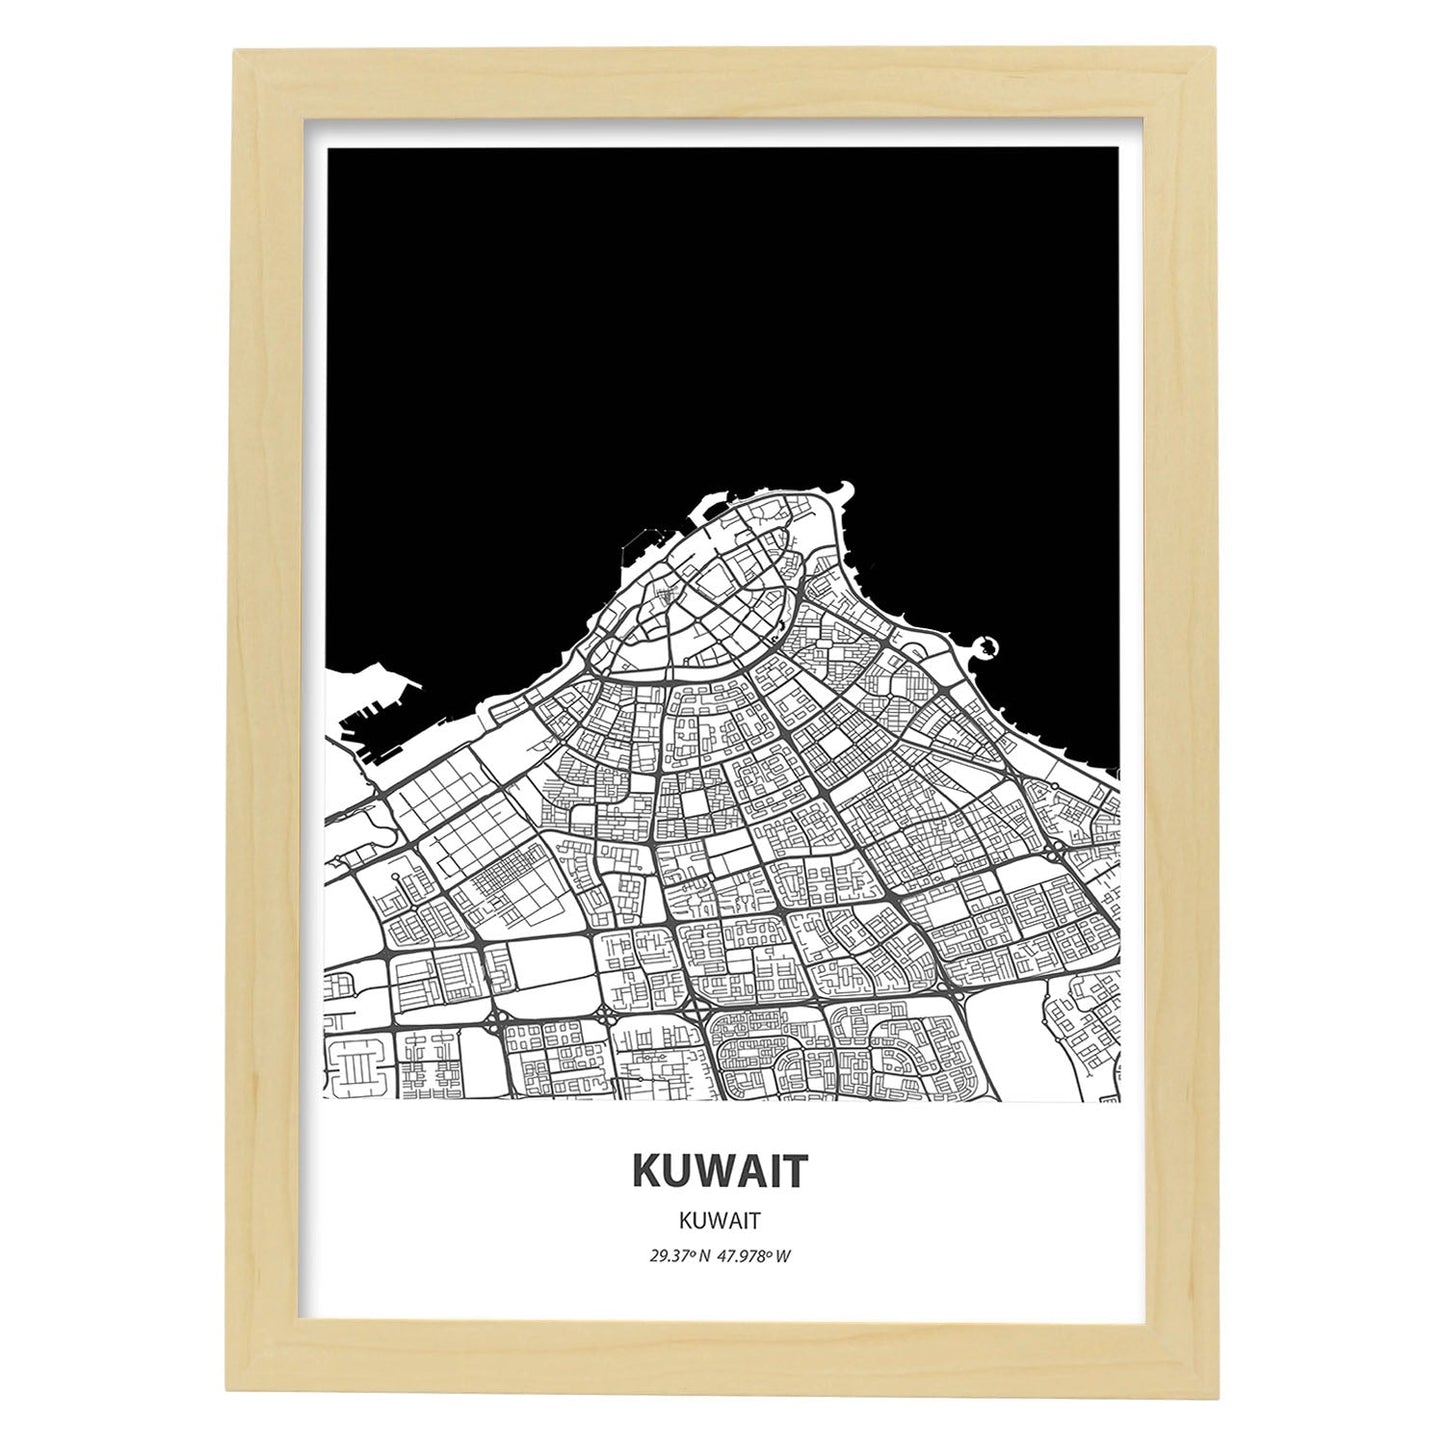 Poster con mapa de Kuwait - Kuwait. Láminas de ciudades de Oriente Medio con mares y ríos en color negro.-Artwork-Nacnic-A4-Marco Madera clara-Nacnic Estudio SL